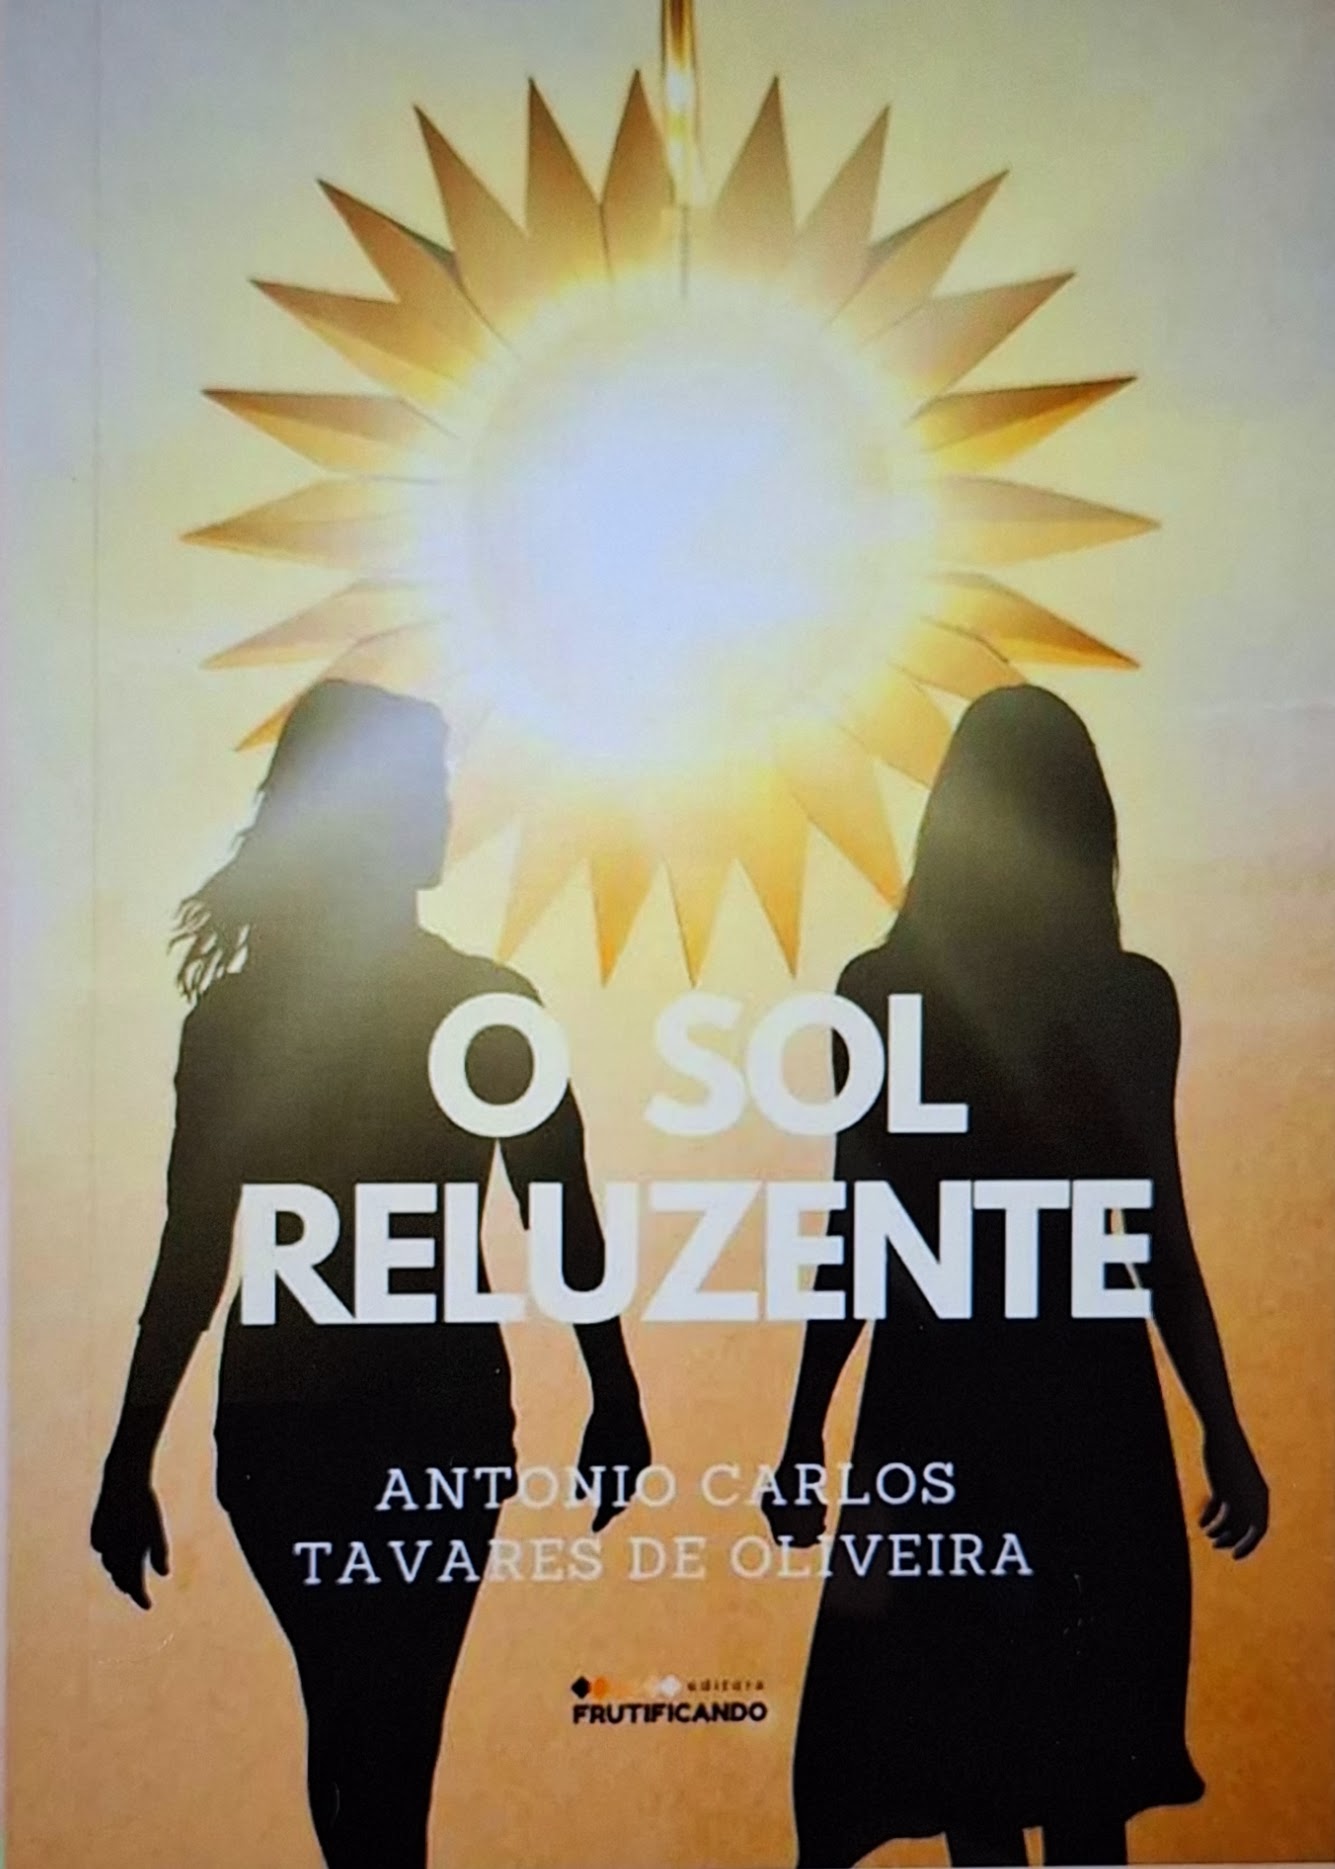 Capa do livro 'O sol reluzente'de Antônio Carlos Tavares de Oliveira, pela Editora Frutificando